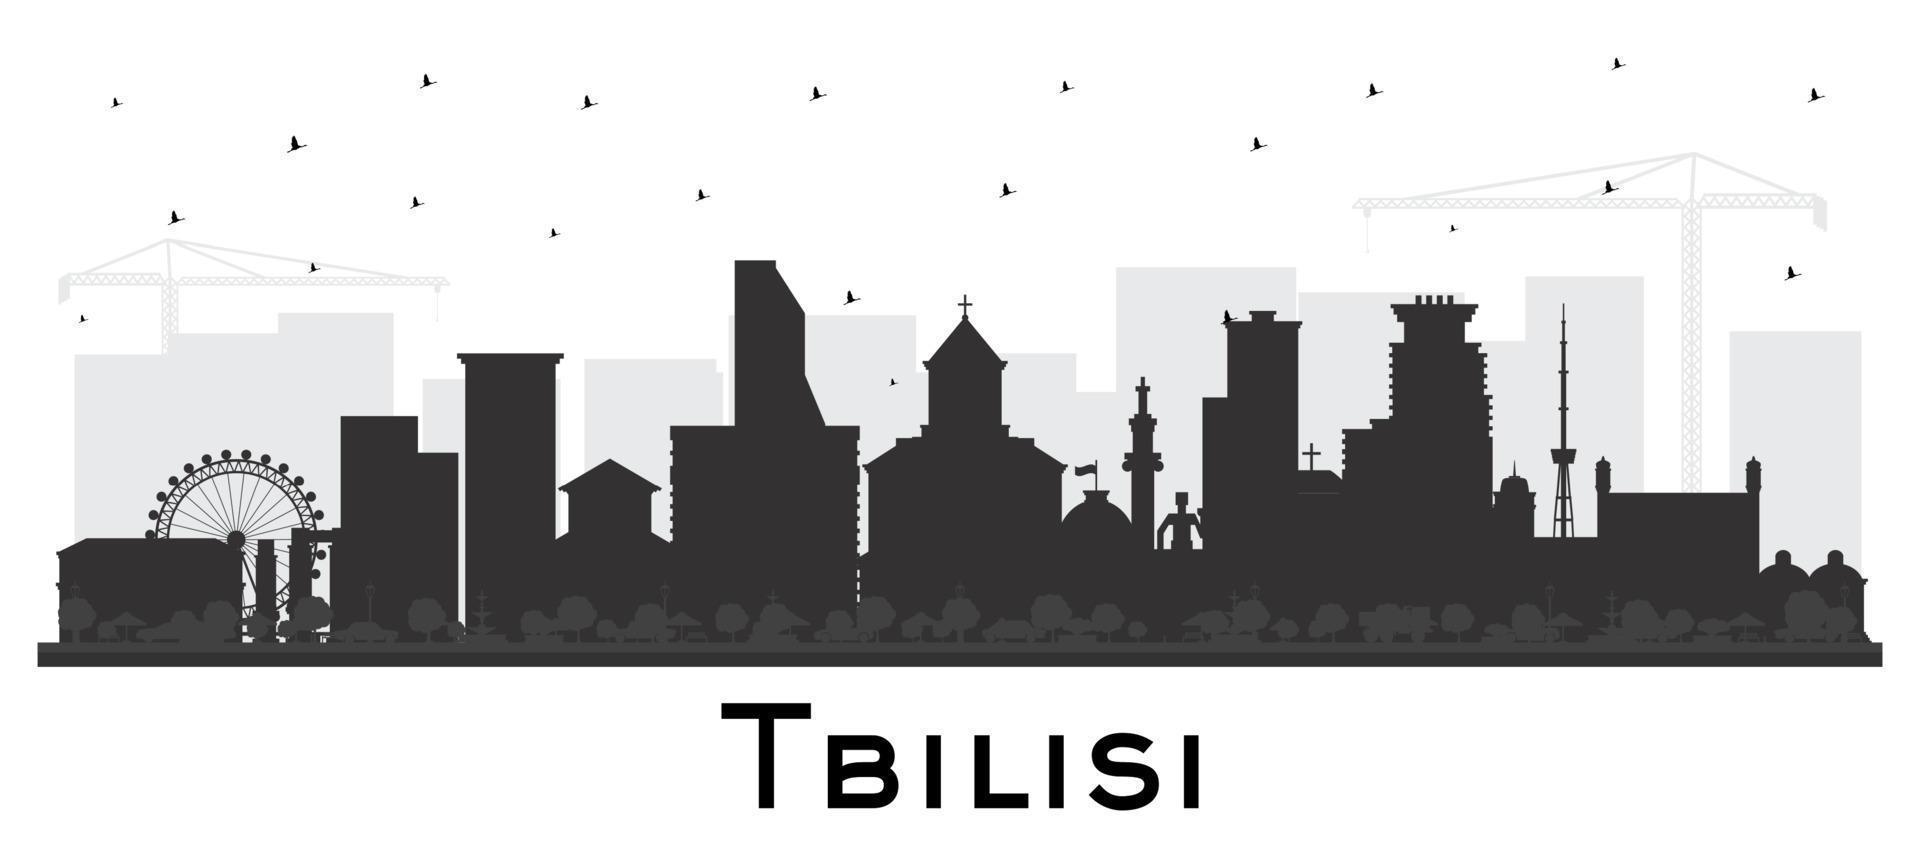 tbilisi Georgia ciudad horizonte silueta con negro edificios aislado en blanco. vector ilustración. tbilisi paisaje urbano con puntos de referencia